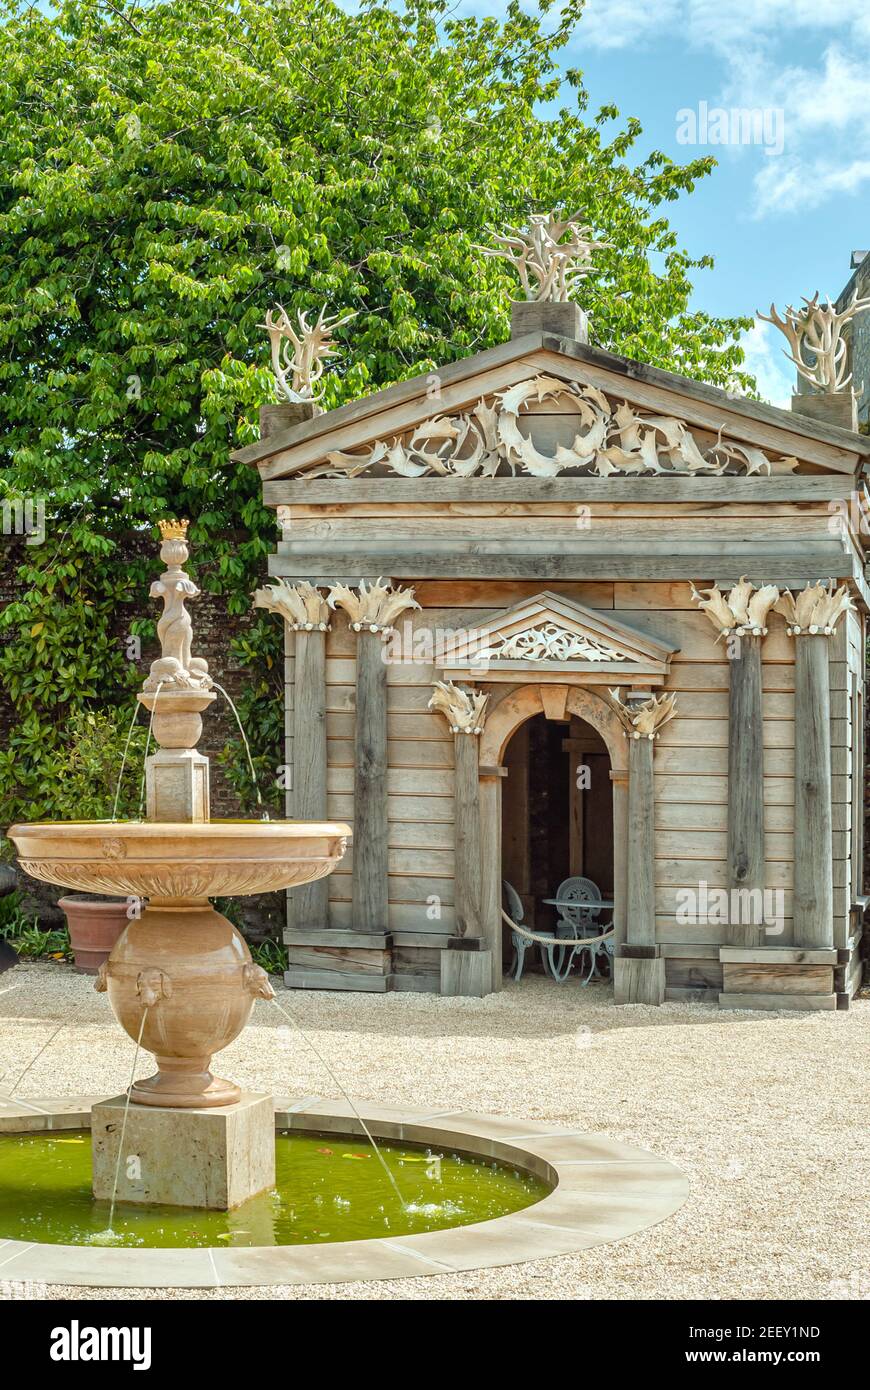 Parc du temple et de la fontaine à Collector Earl's Garden au château d'Arundel, West Sussex, Angleterre, Royaume-Uni Banque D'Images